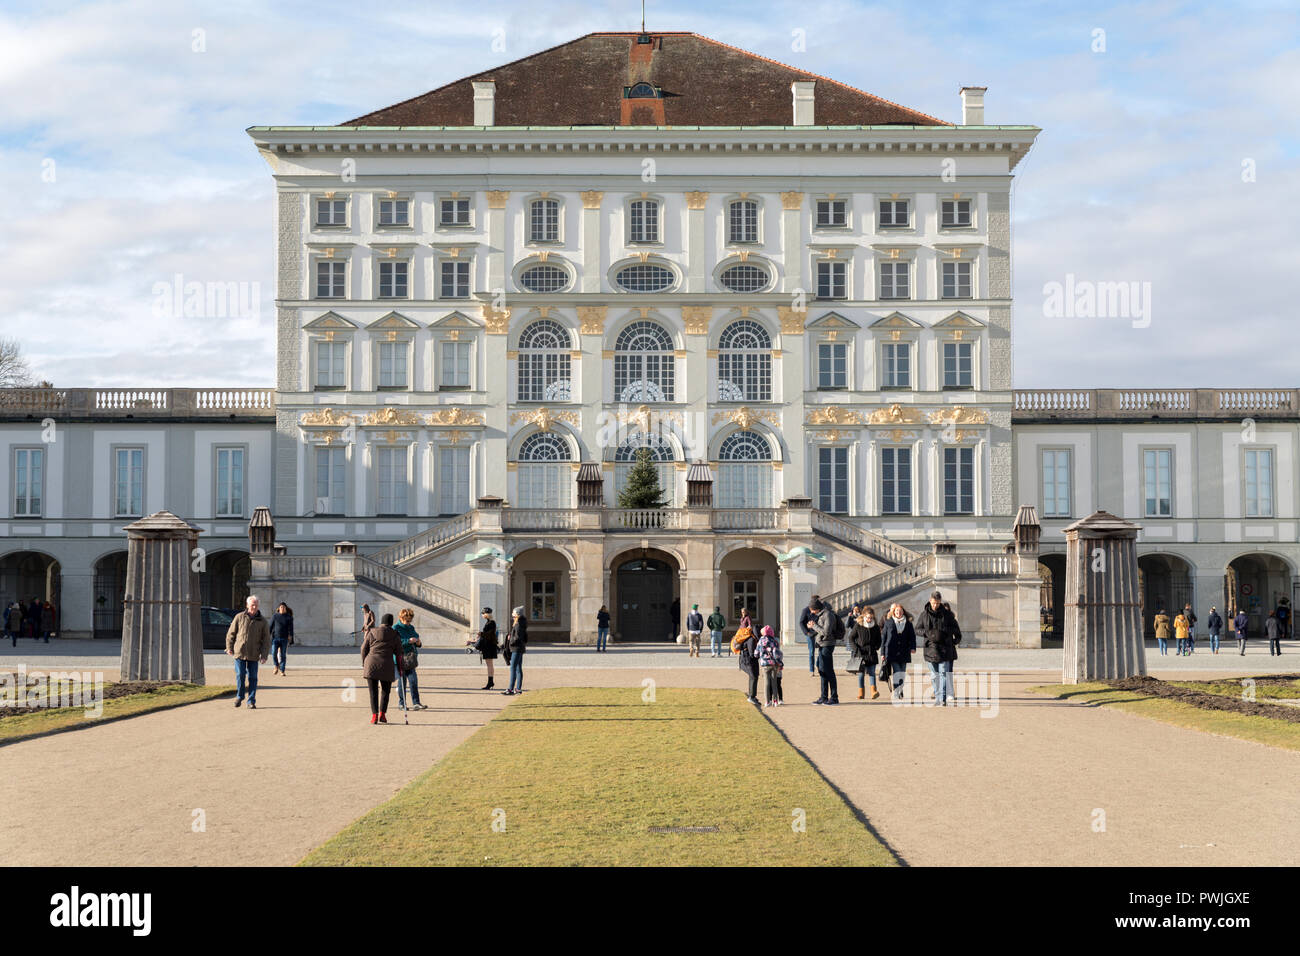 Nymphenburg Palace, Munich, Germany Stock Photo